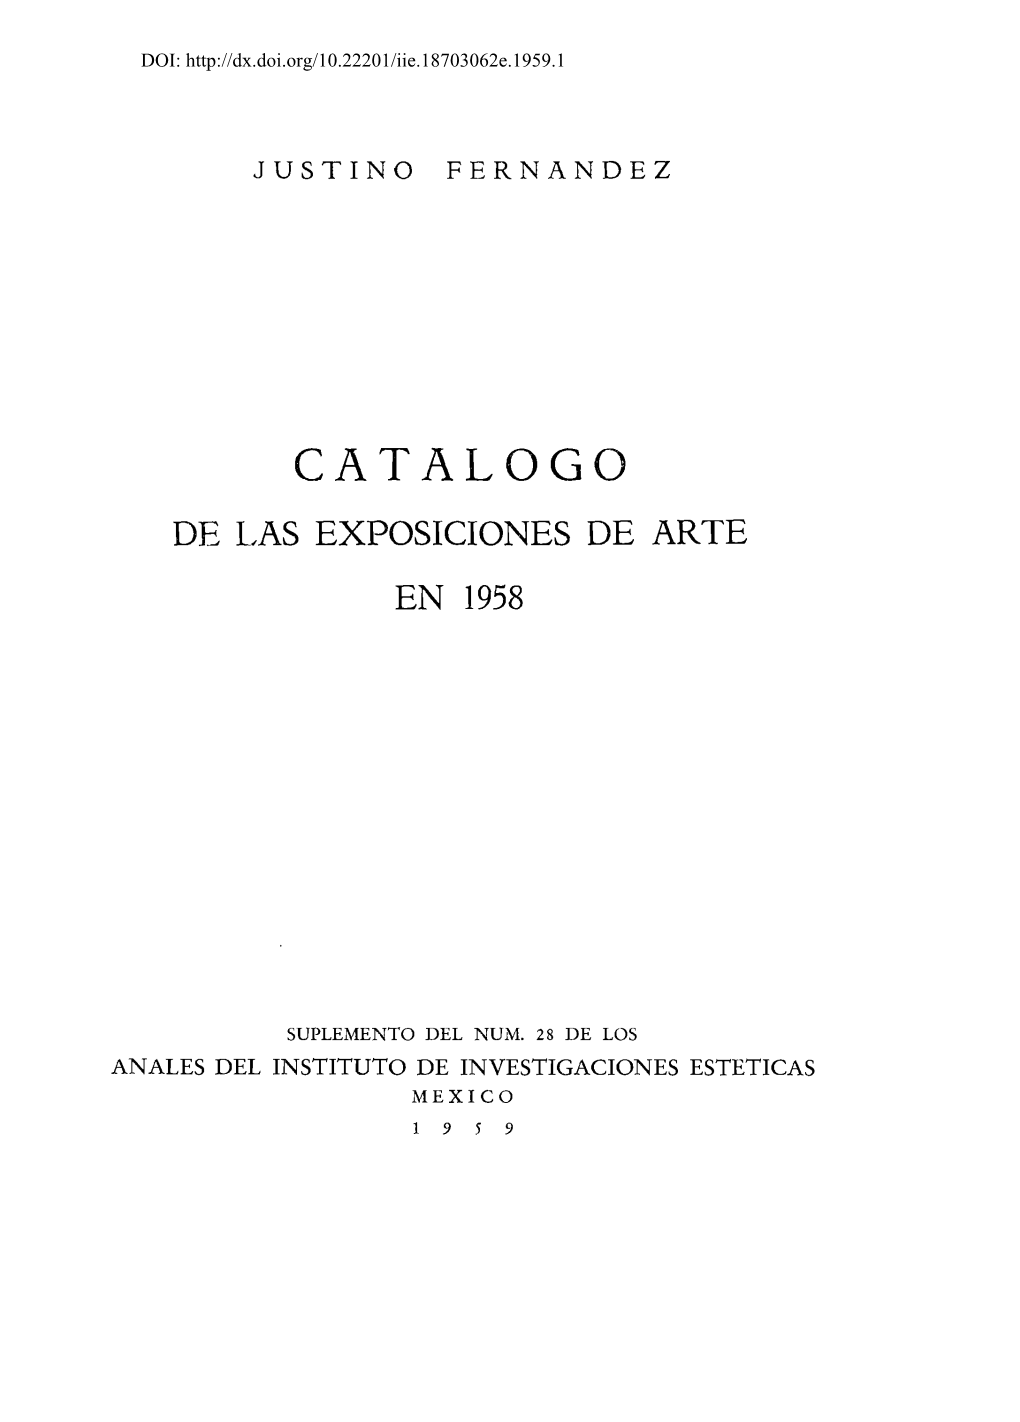 Catalogo De Las Exposiciones De Arte En 1958